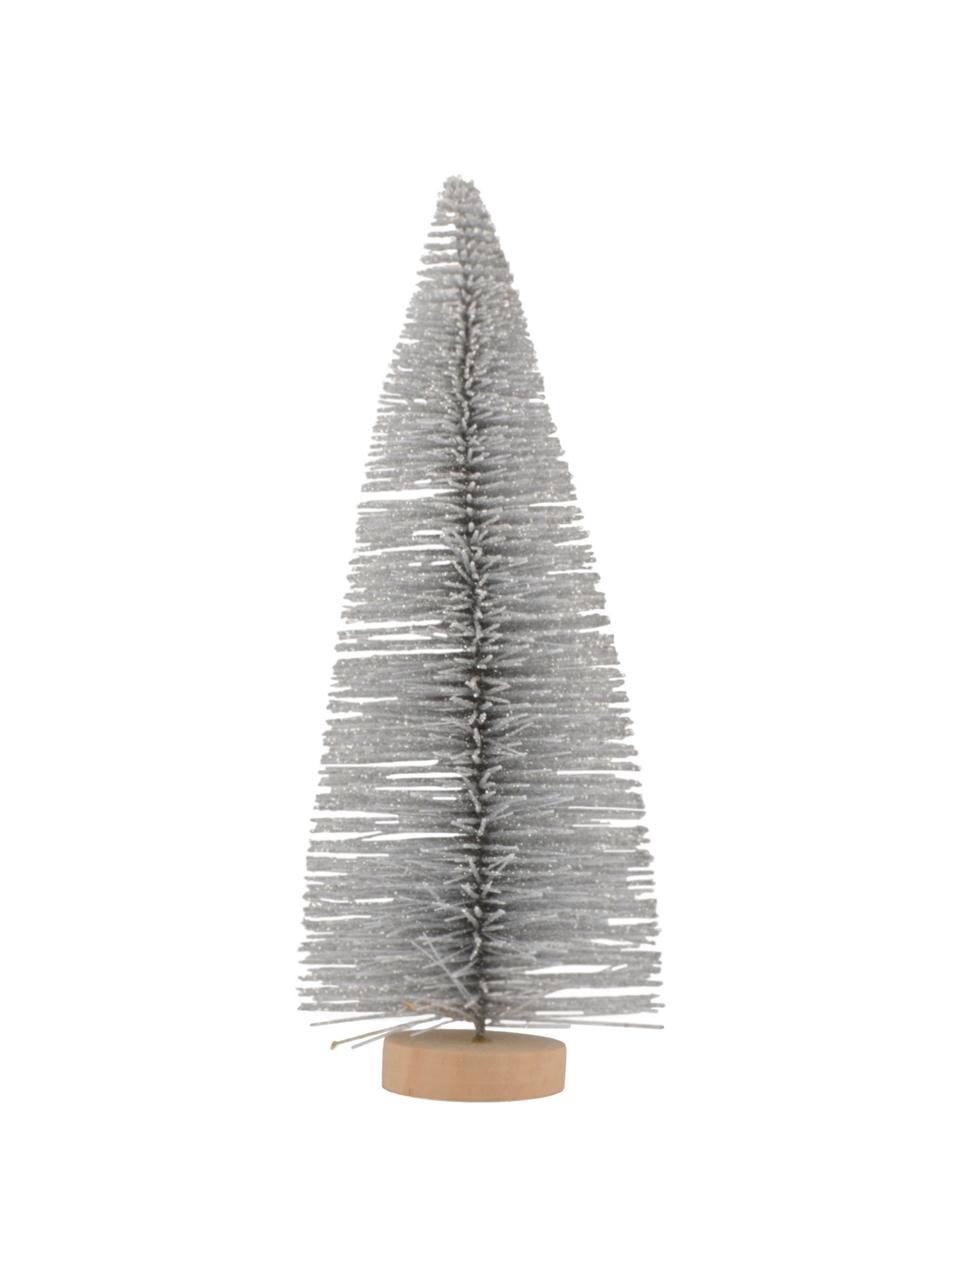 Objet décoratif Christmas Tree, Couleur argentée, brun clair